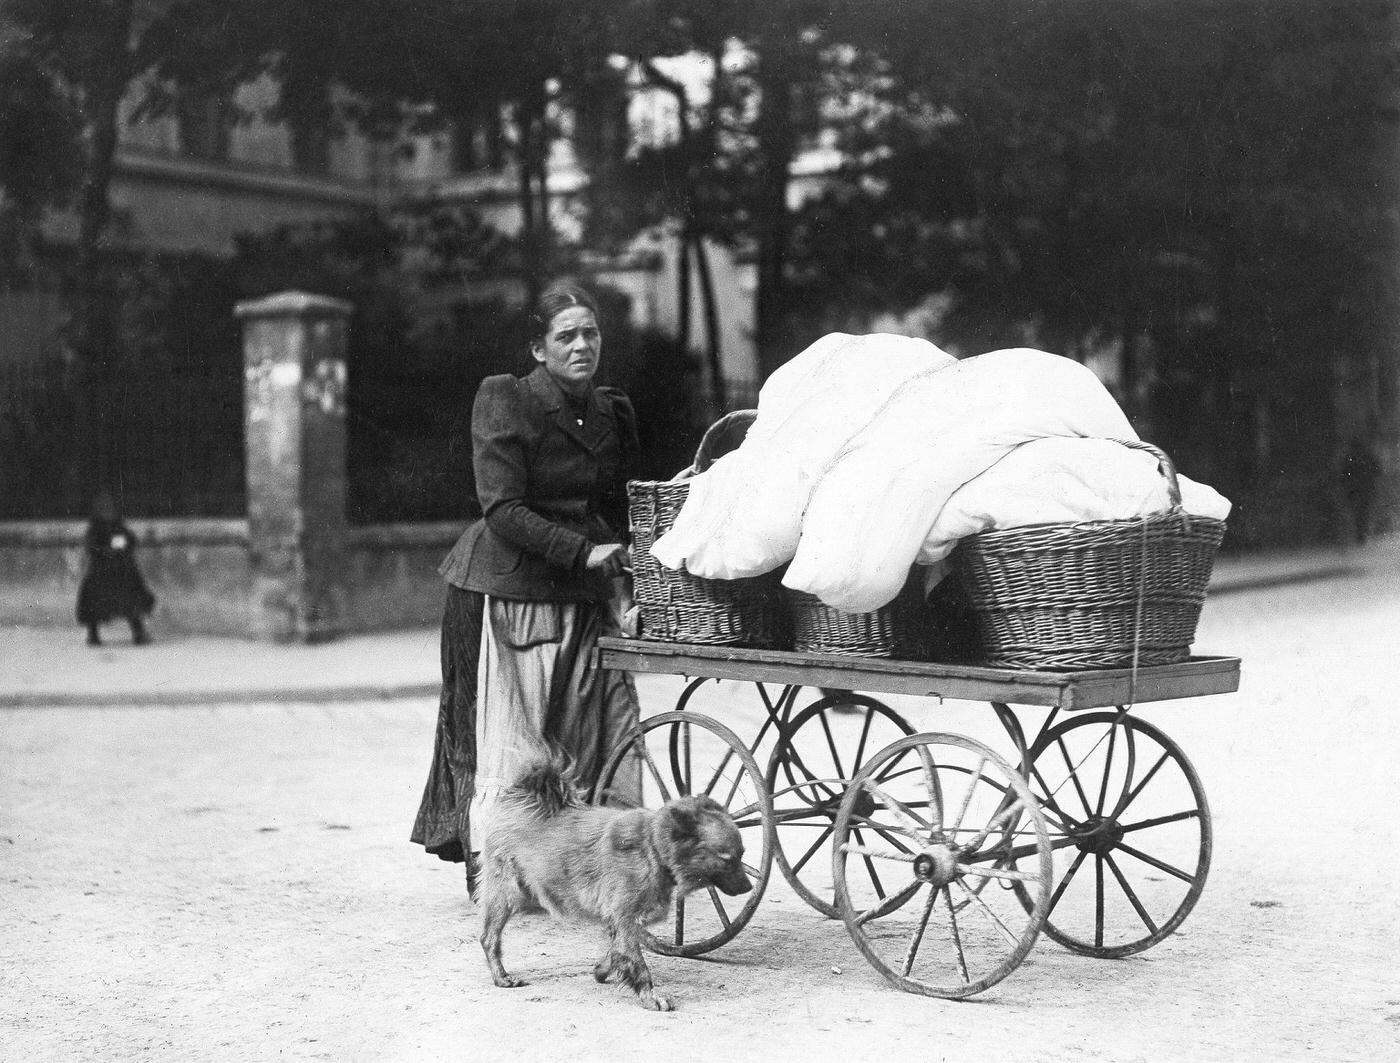 Washerwoman pushing a cart, Munich, Germany, around 1900.